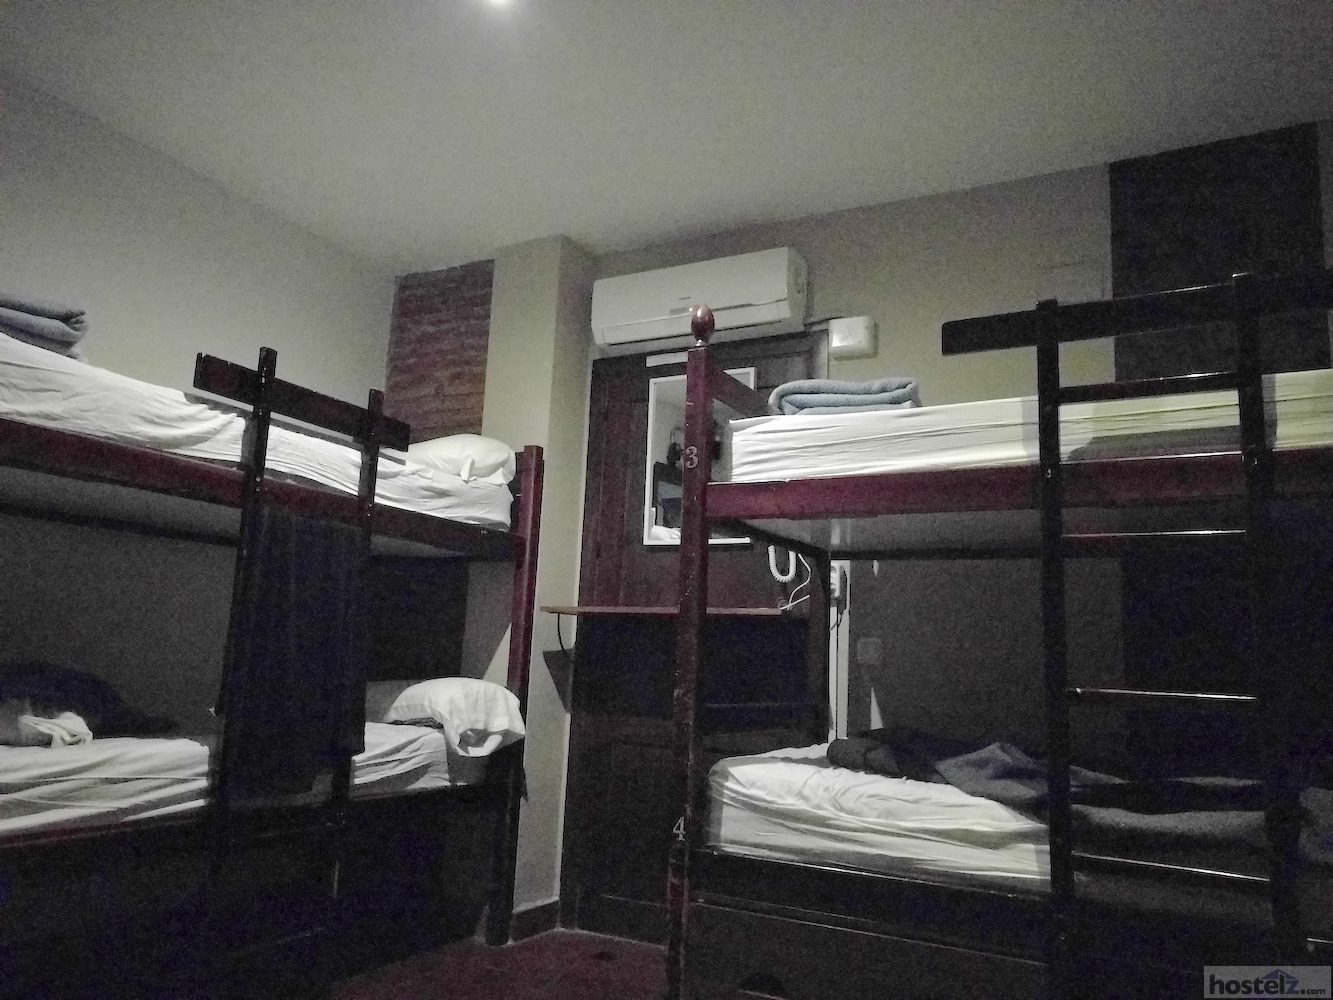 Six-bed dorm room